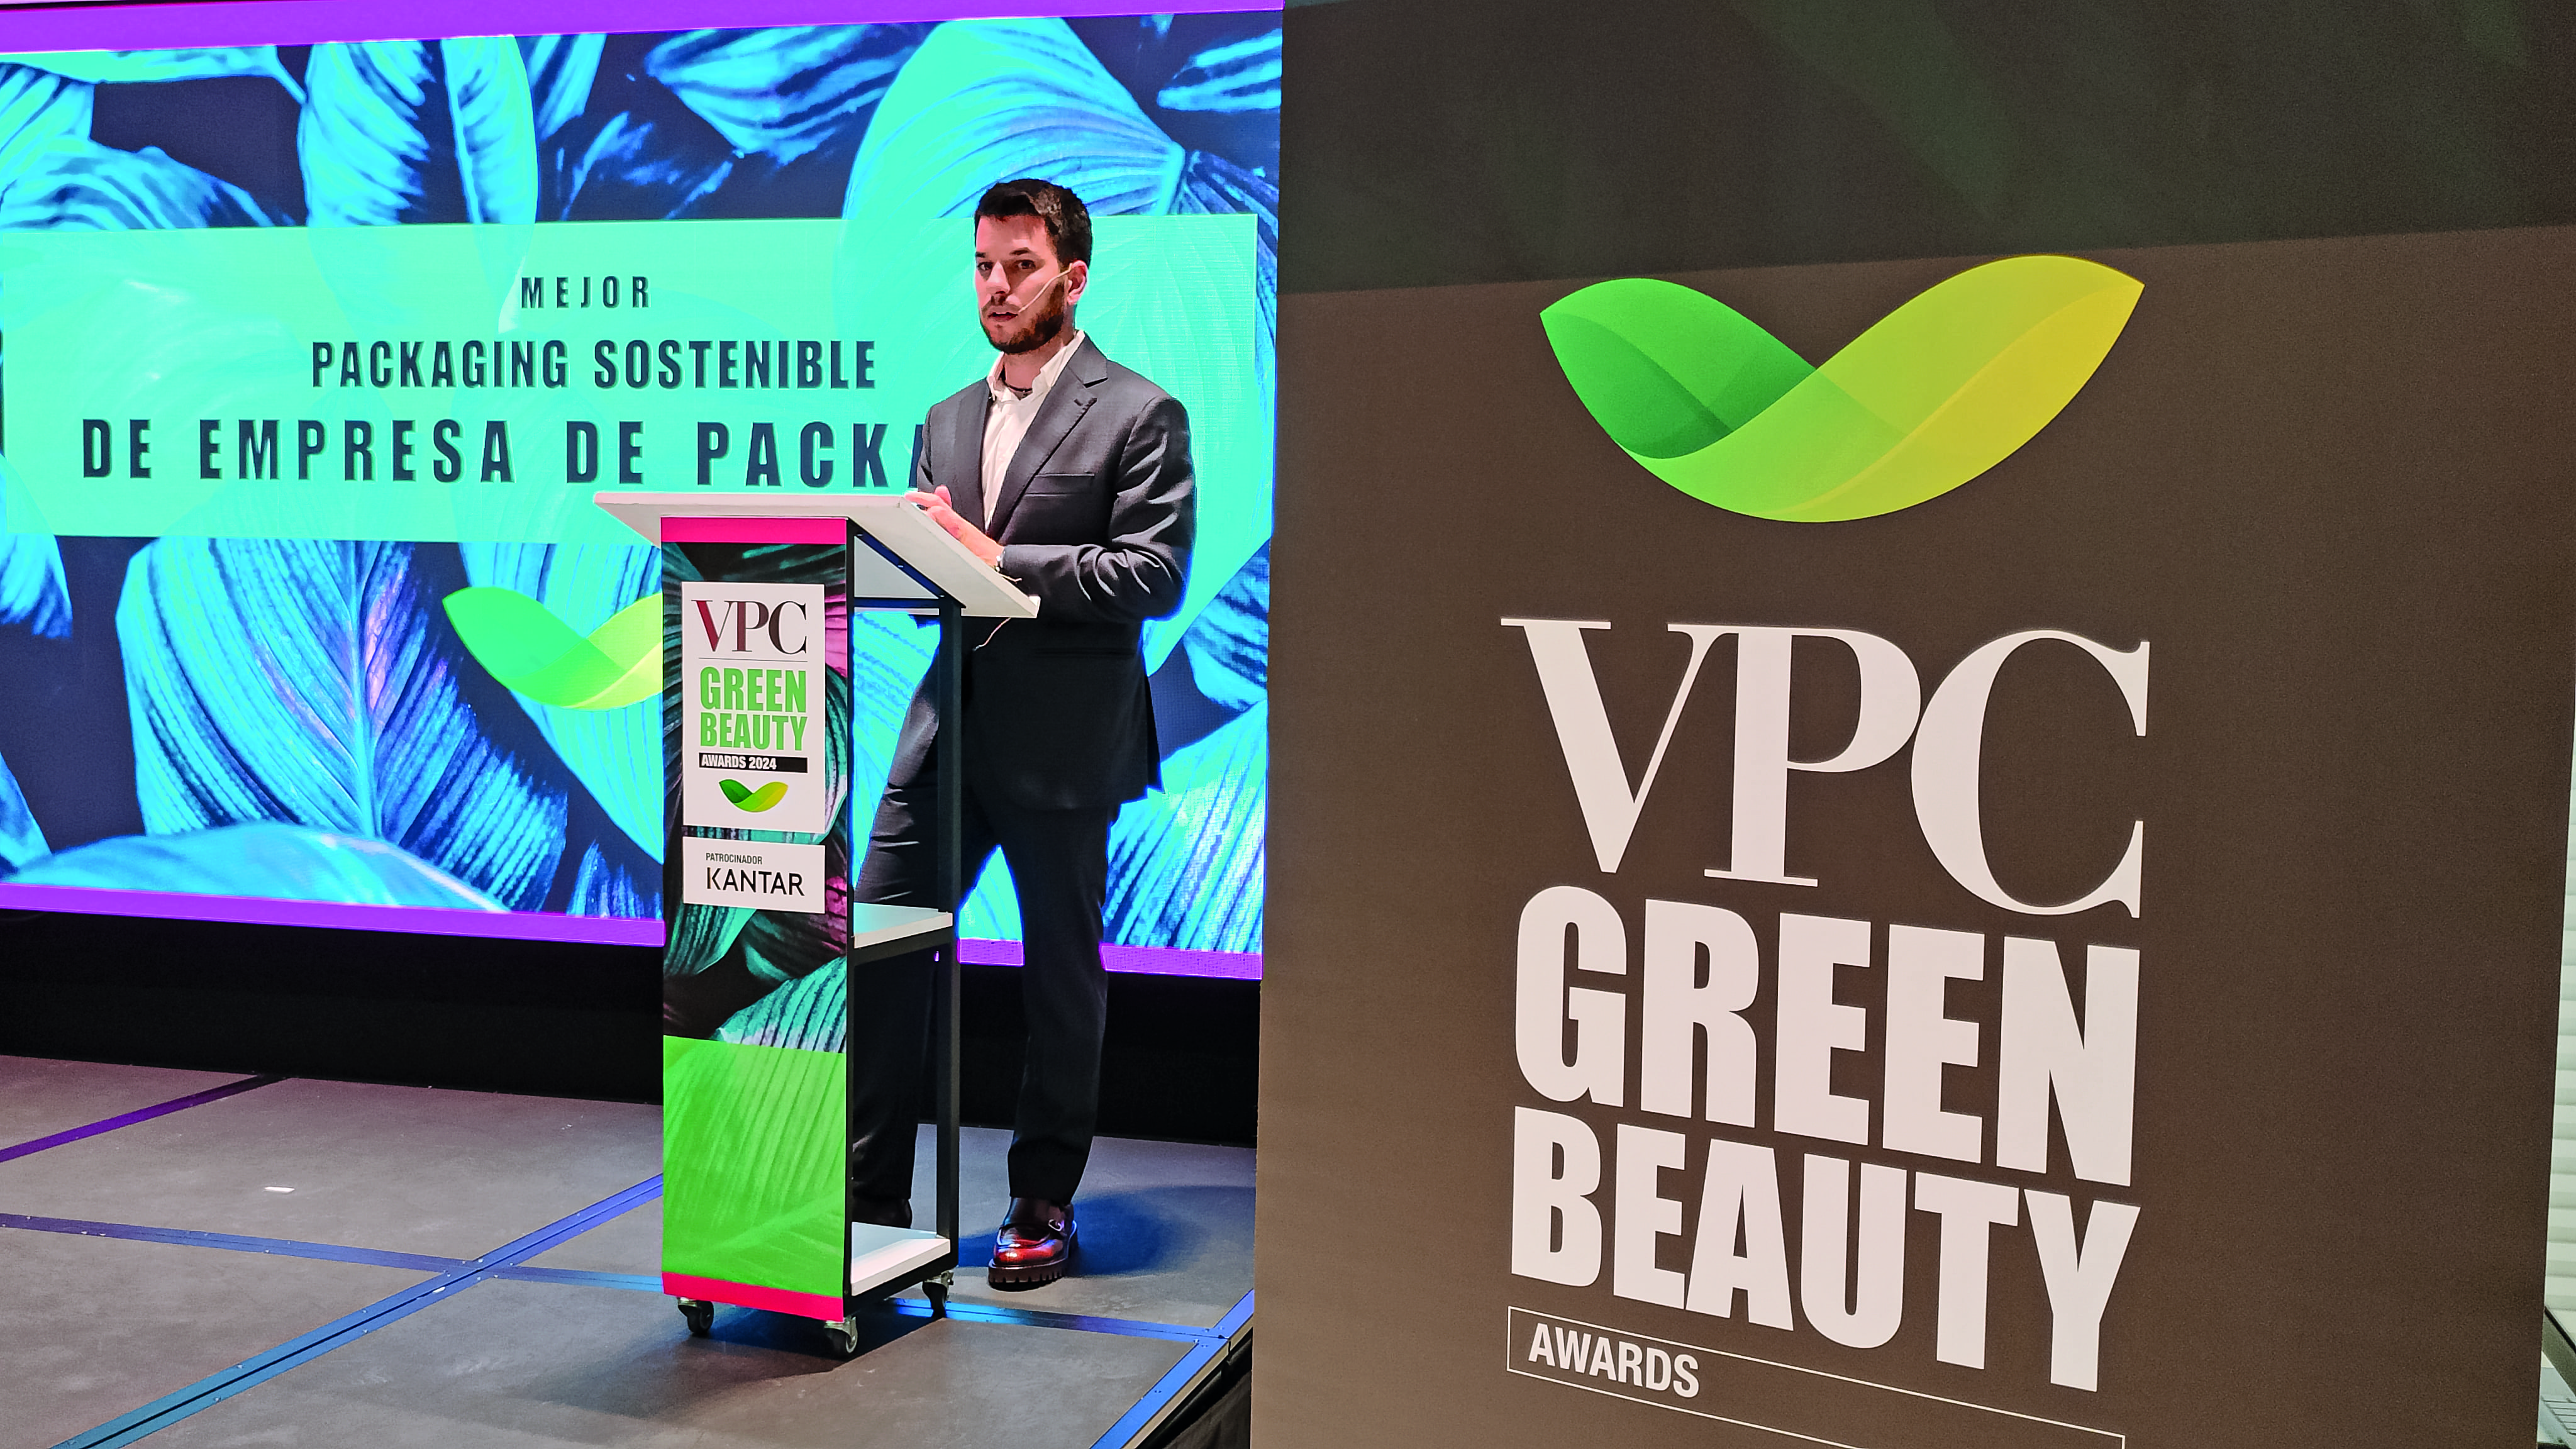 VPC Green Beauty Awards.